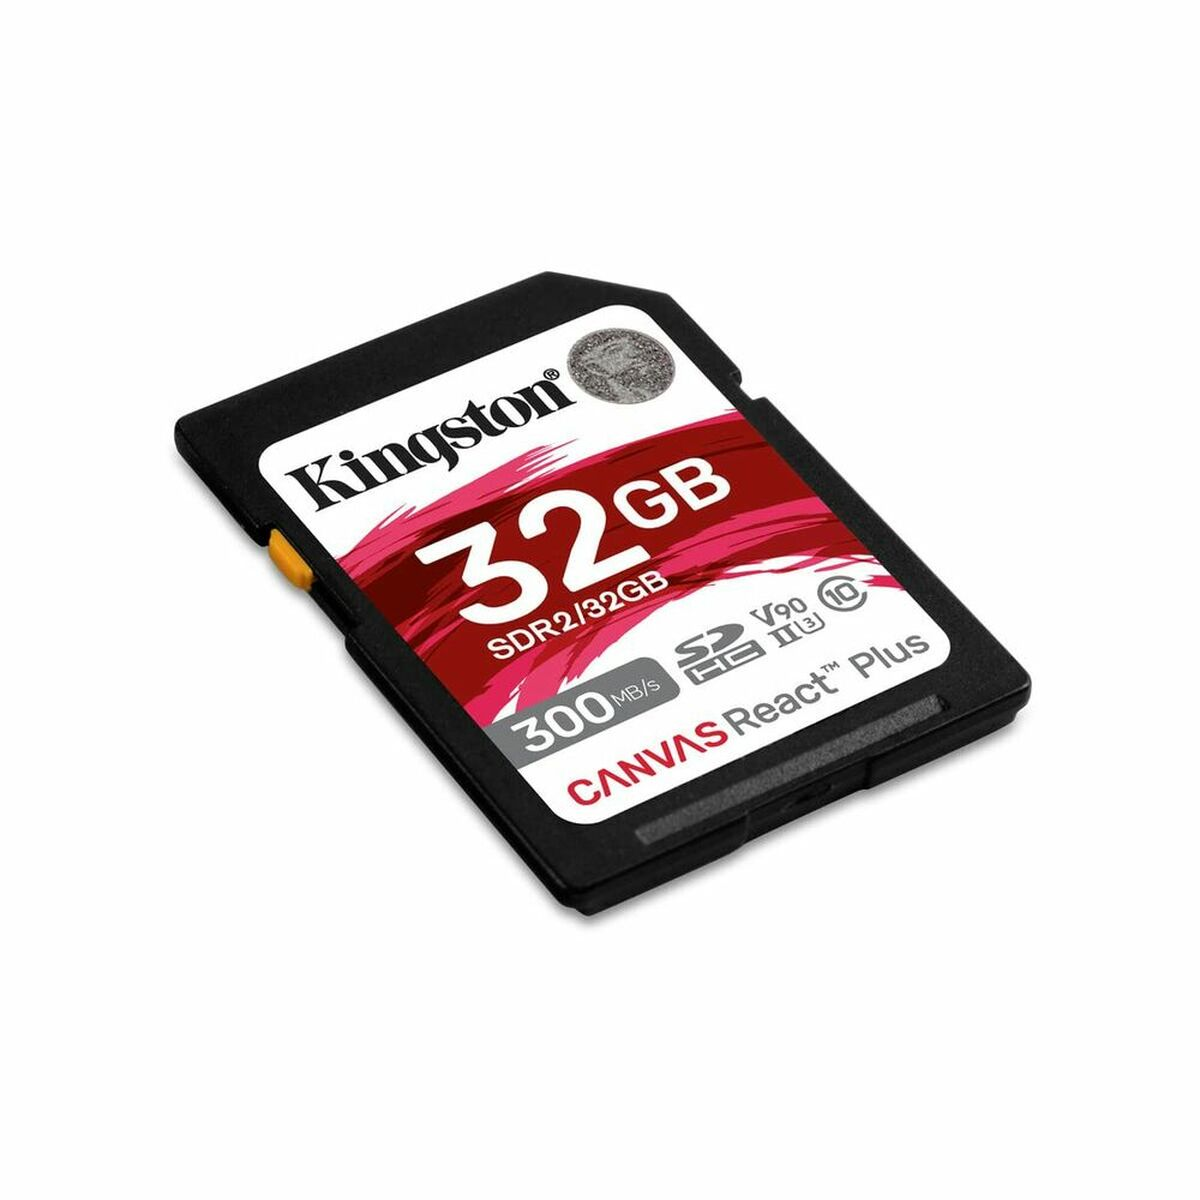 KINGSTON React Plus, Micro-SD Speicherkarte, 32 GB